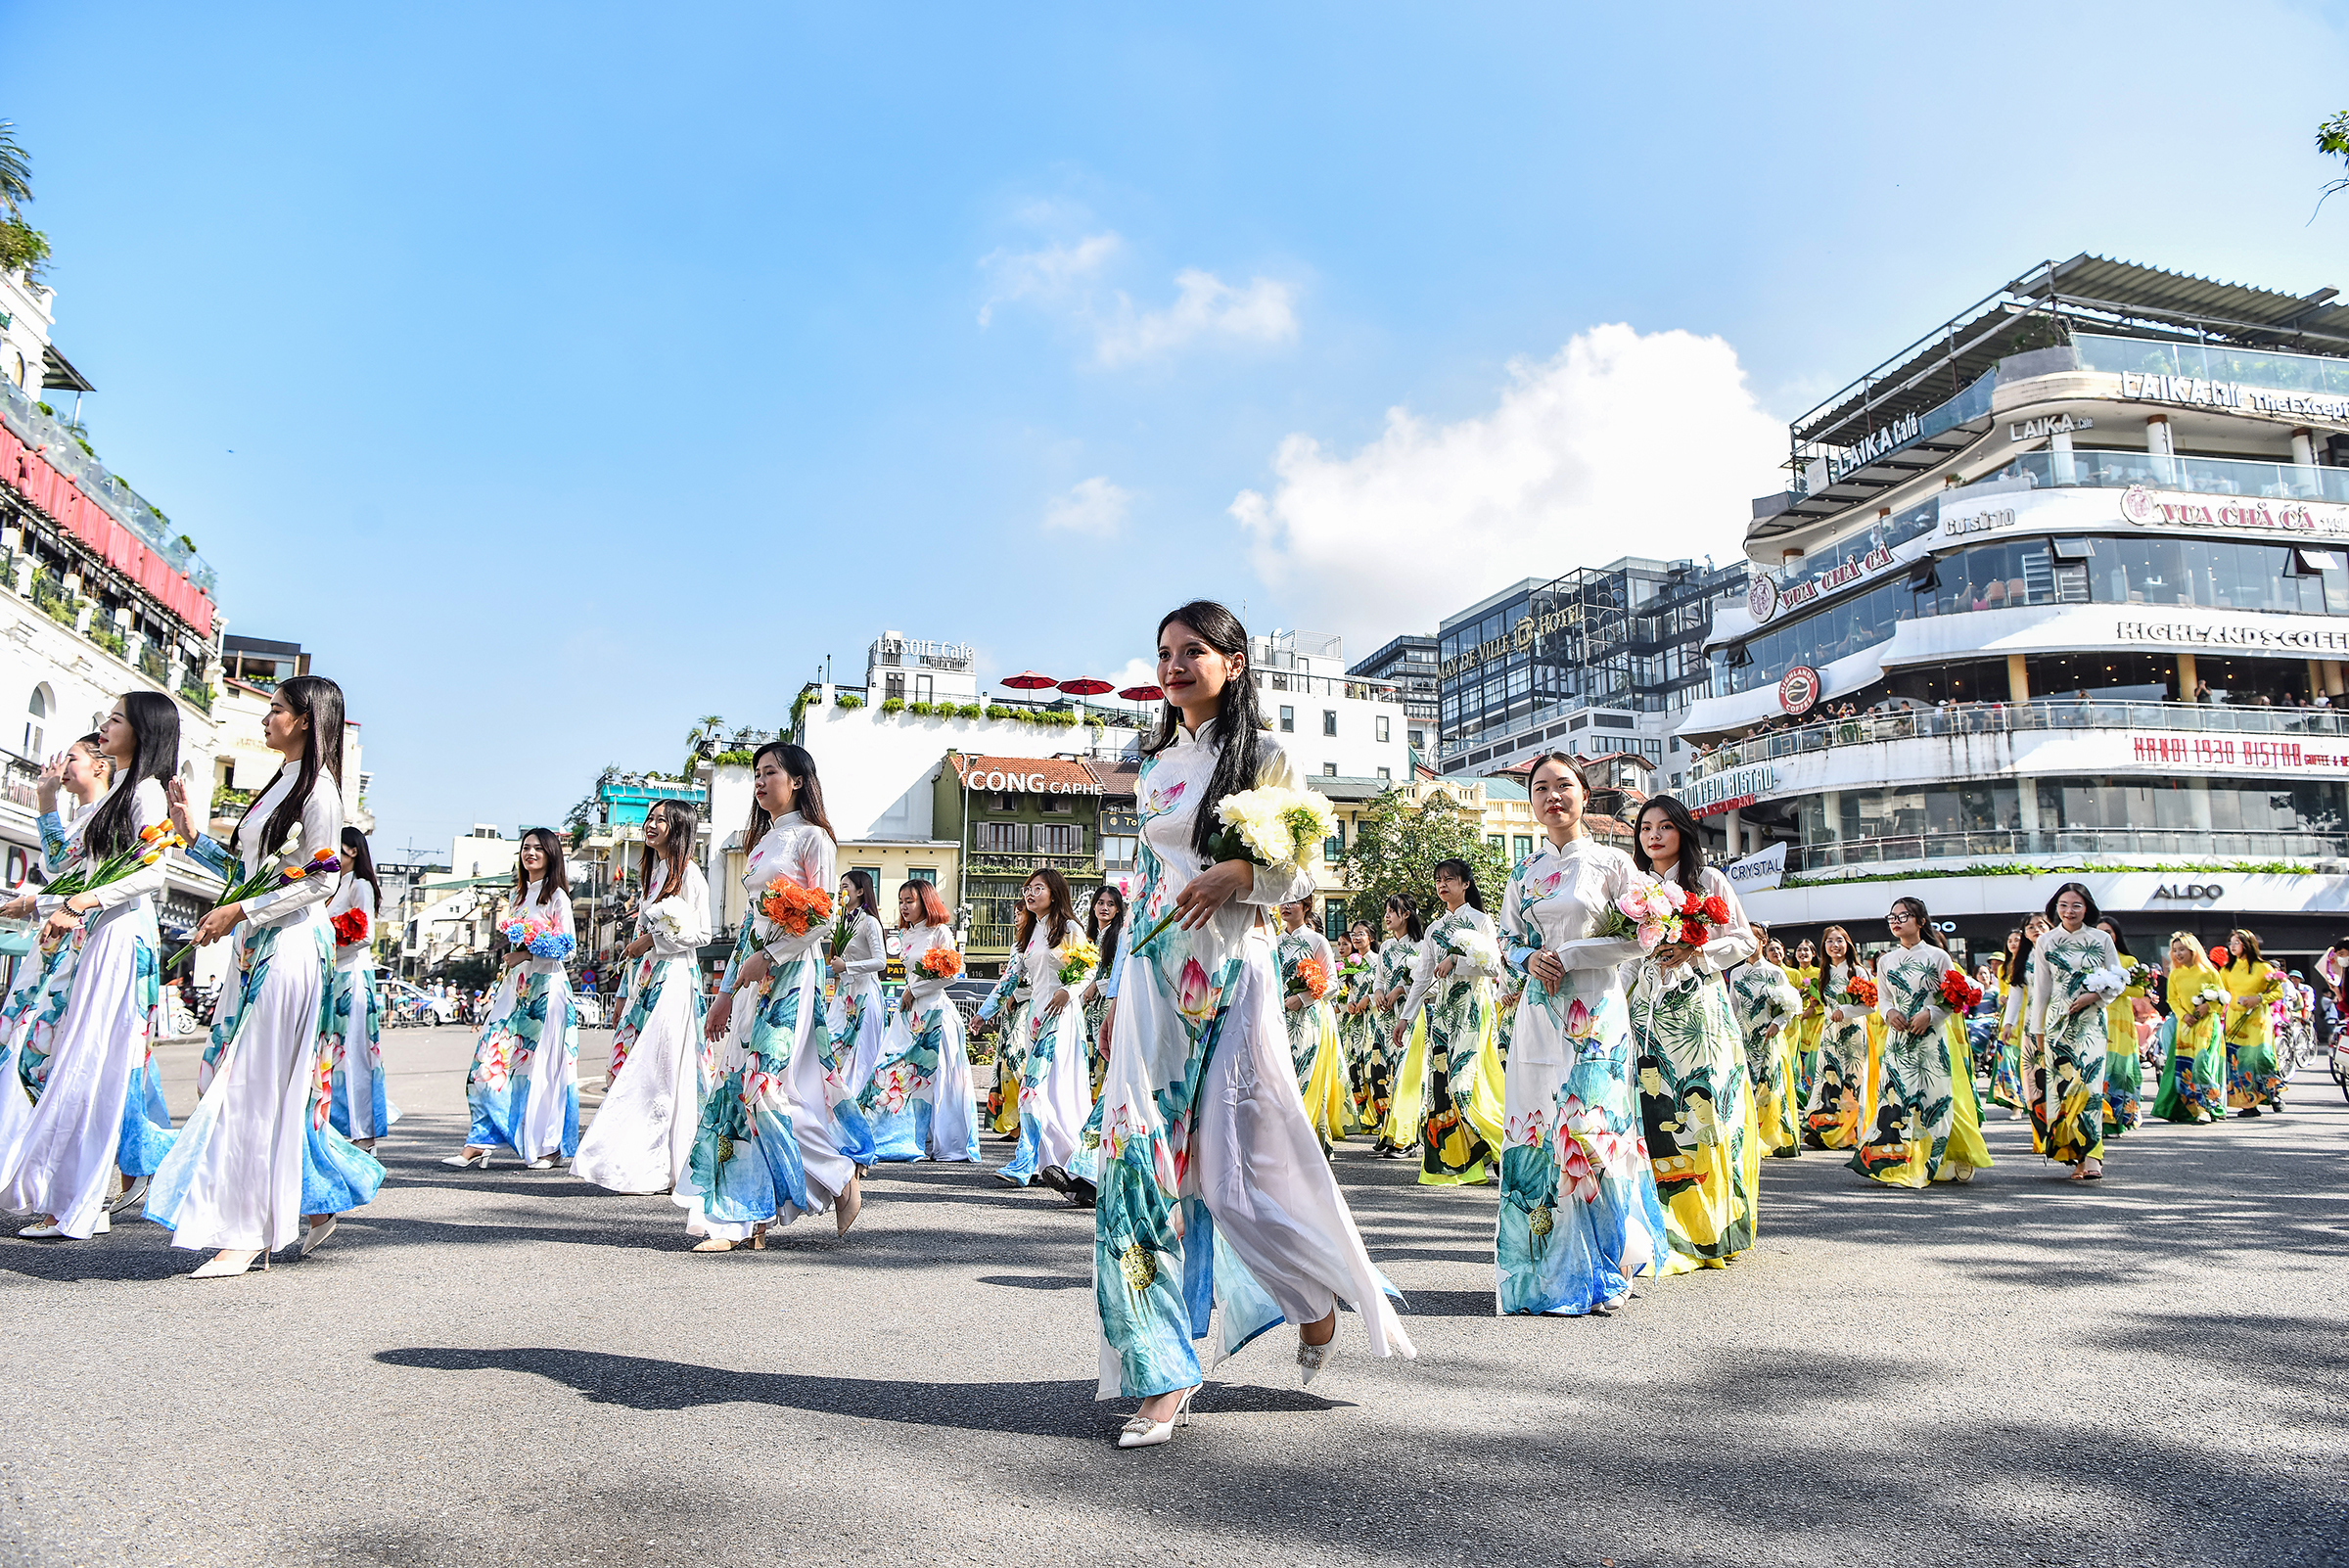 Các cô gái thướt tha trong tà áo dài, diễu hành trên đường phố trong khuôn khổ Festival Thu Hà Nội. (Ảnh: Lấy từ trang VnExpress)